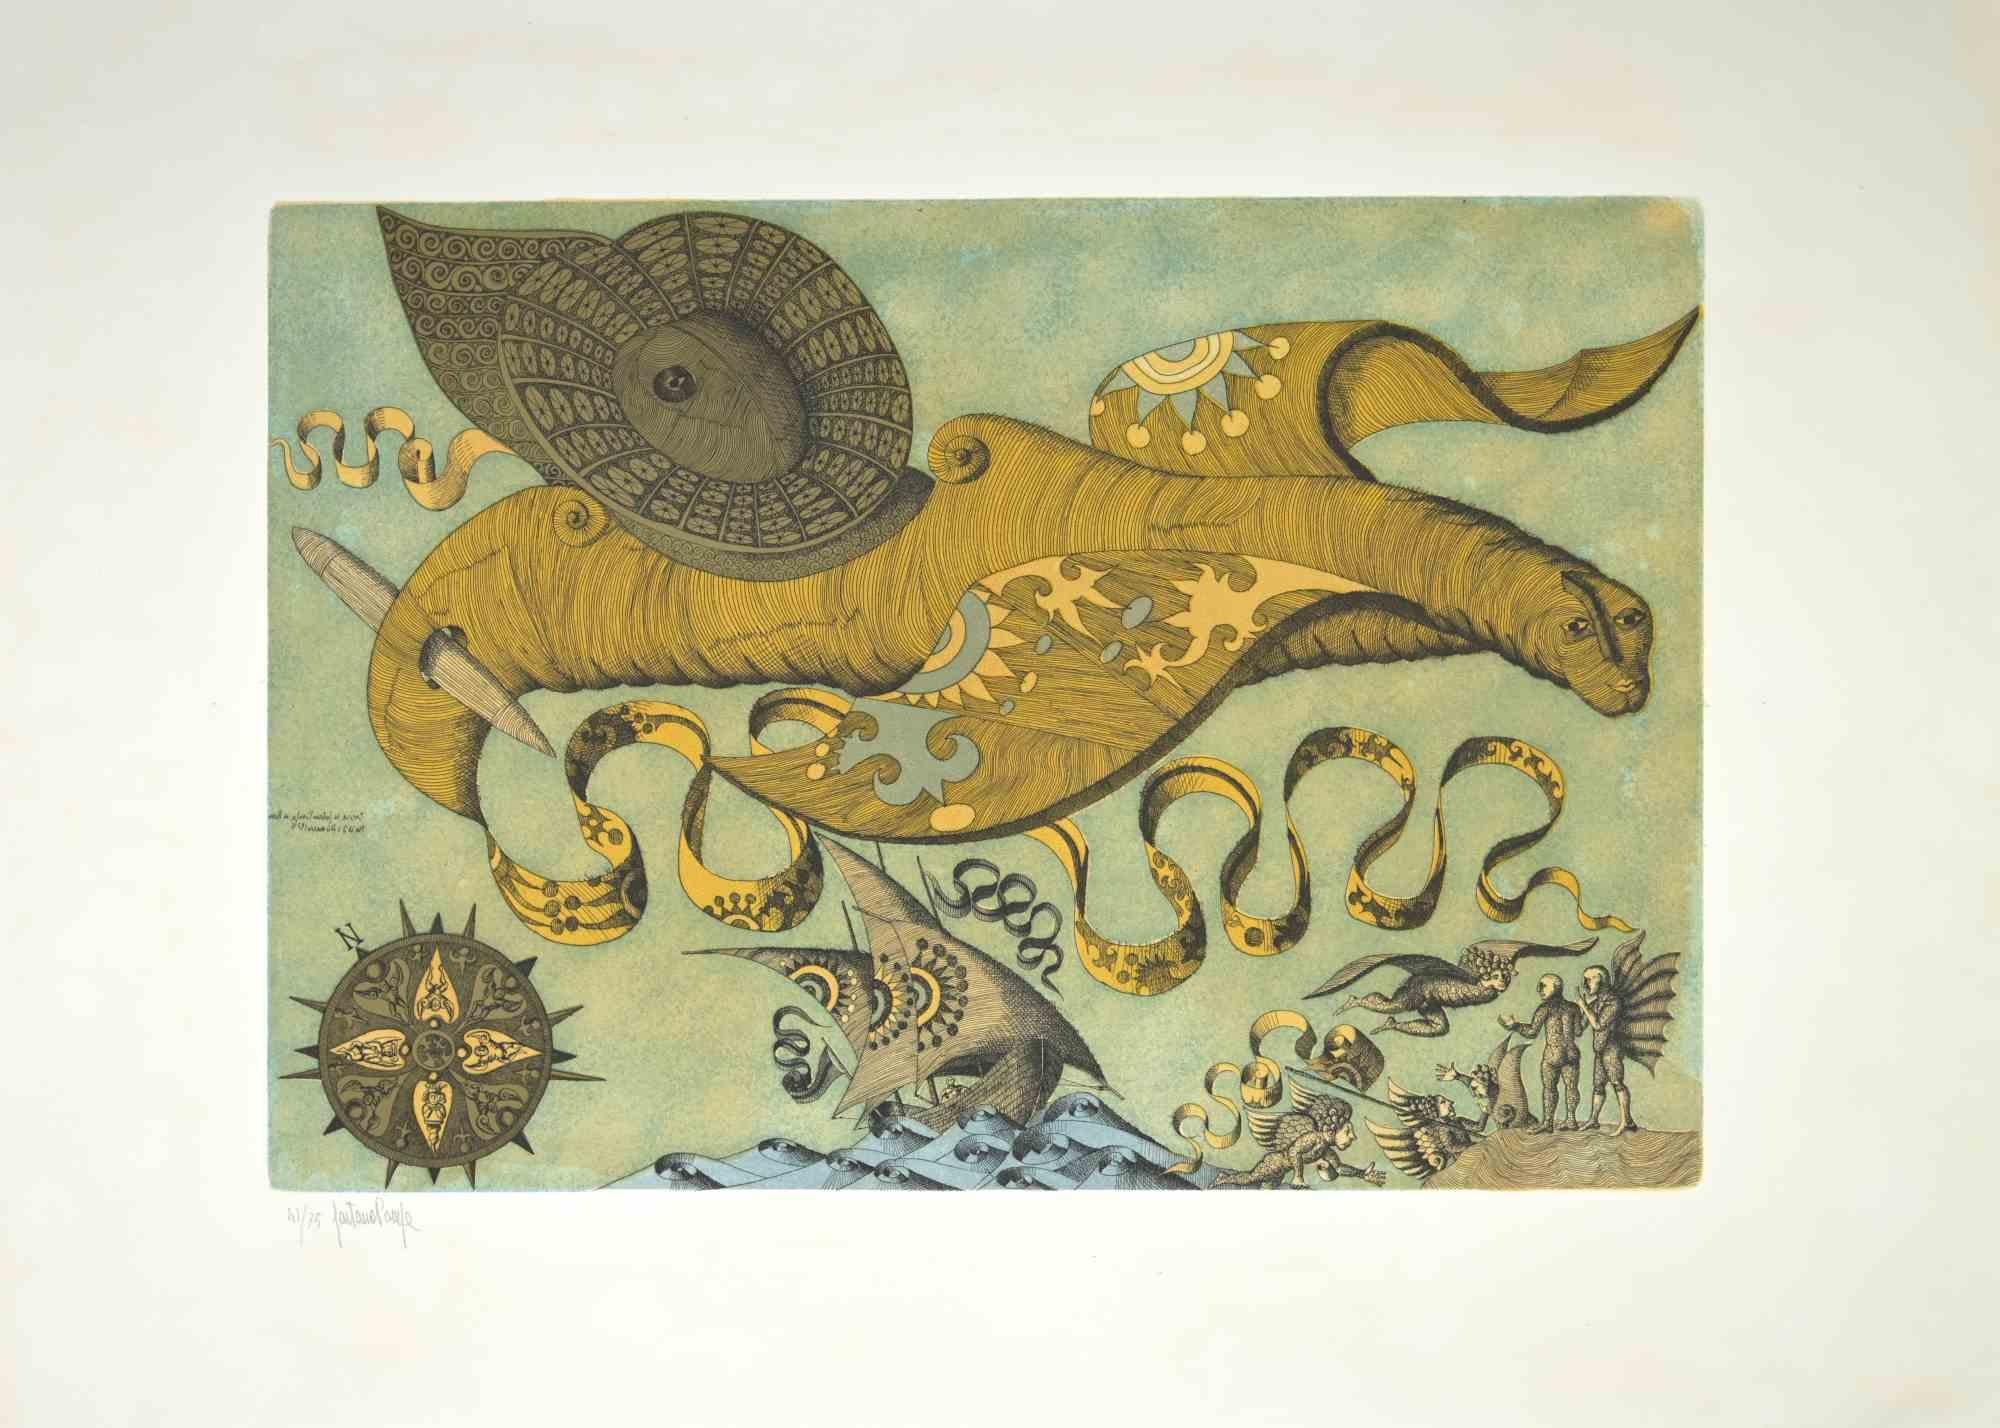 El animal imaginario -  Aguafuerte de Gaetano Pompa - Años 70